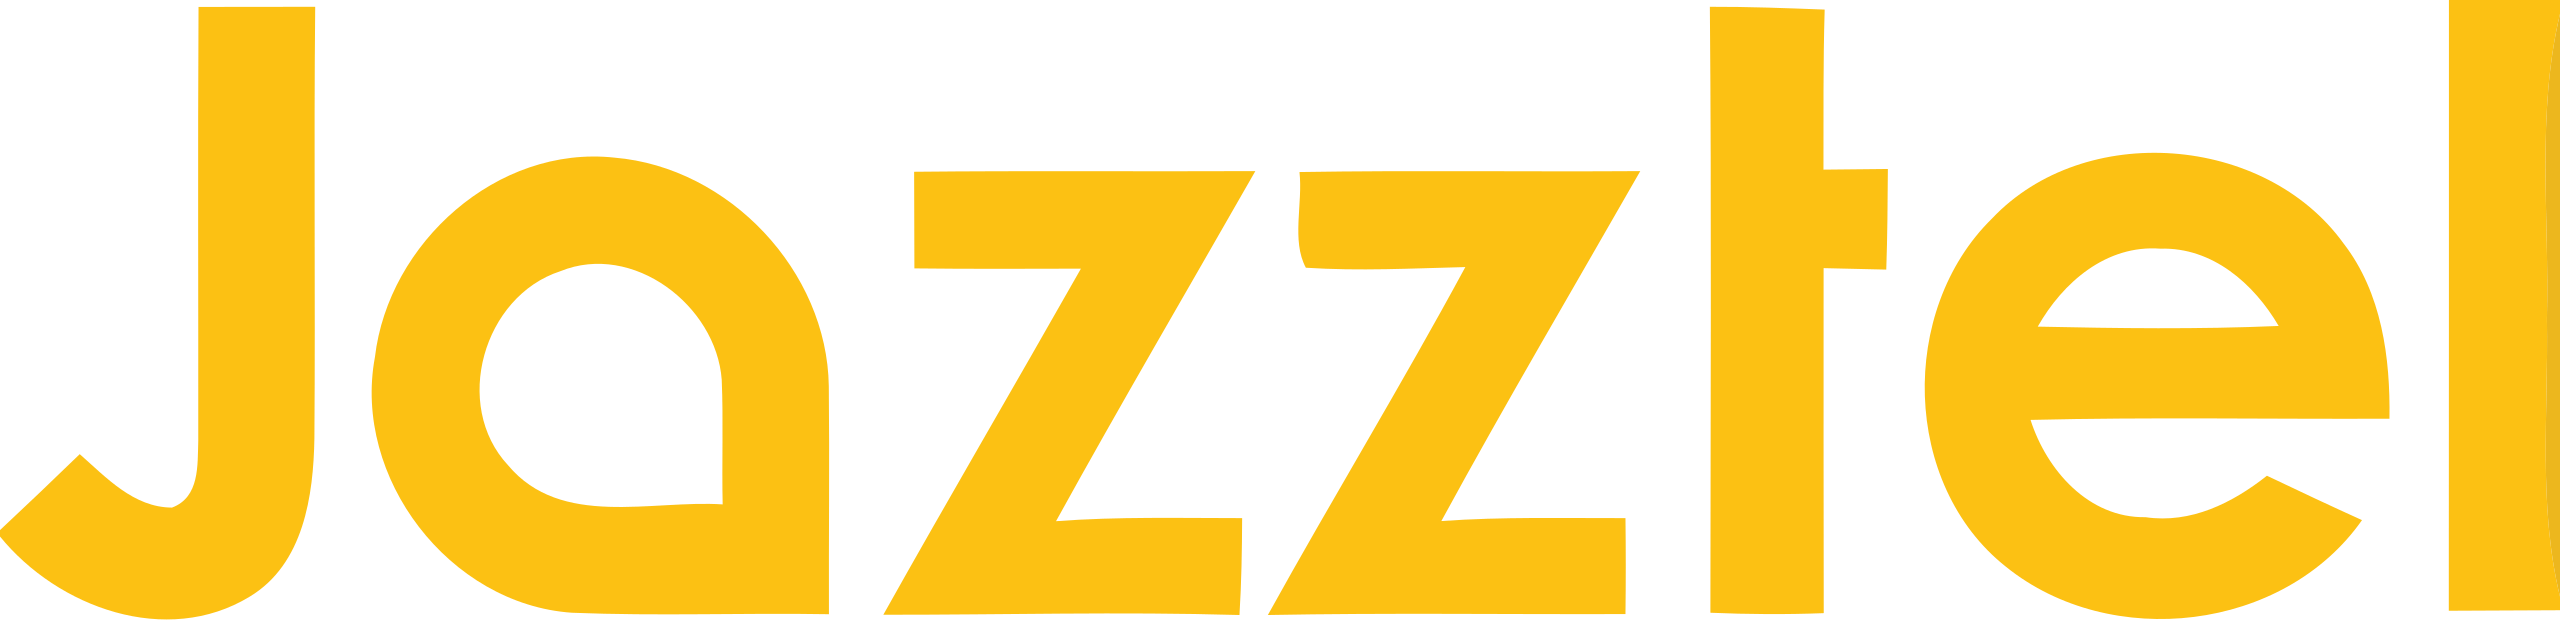 Logo de la operadora Jazztel